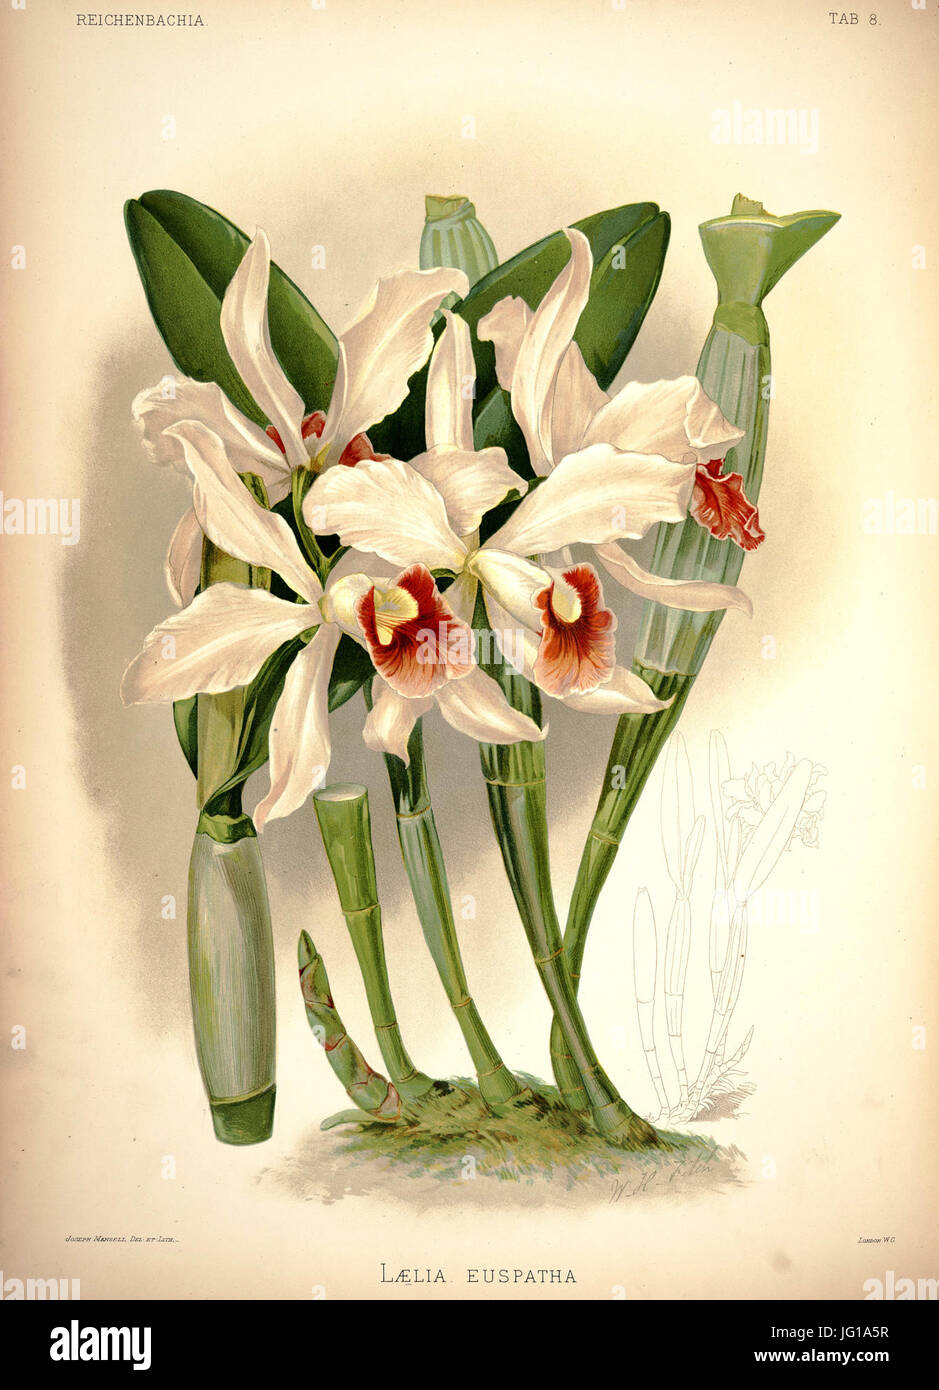 Frederick Sander - Reichenbachia I plate 08 (1888) - Laelia × euspatha Stock Photo